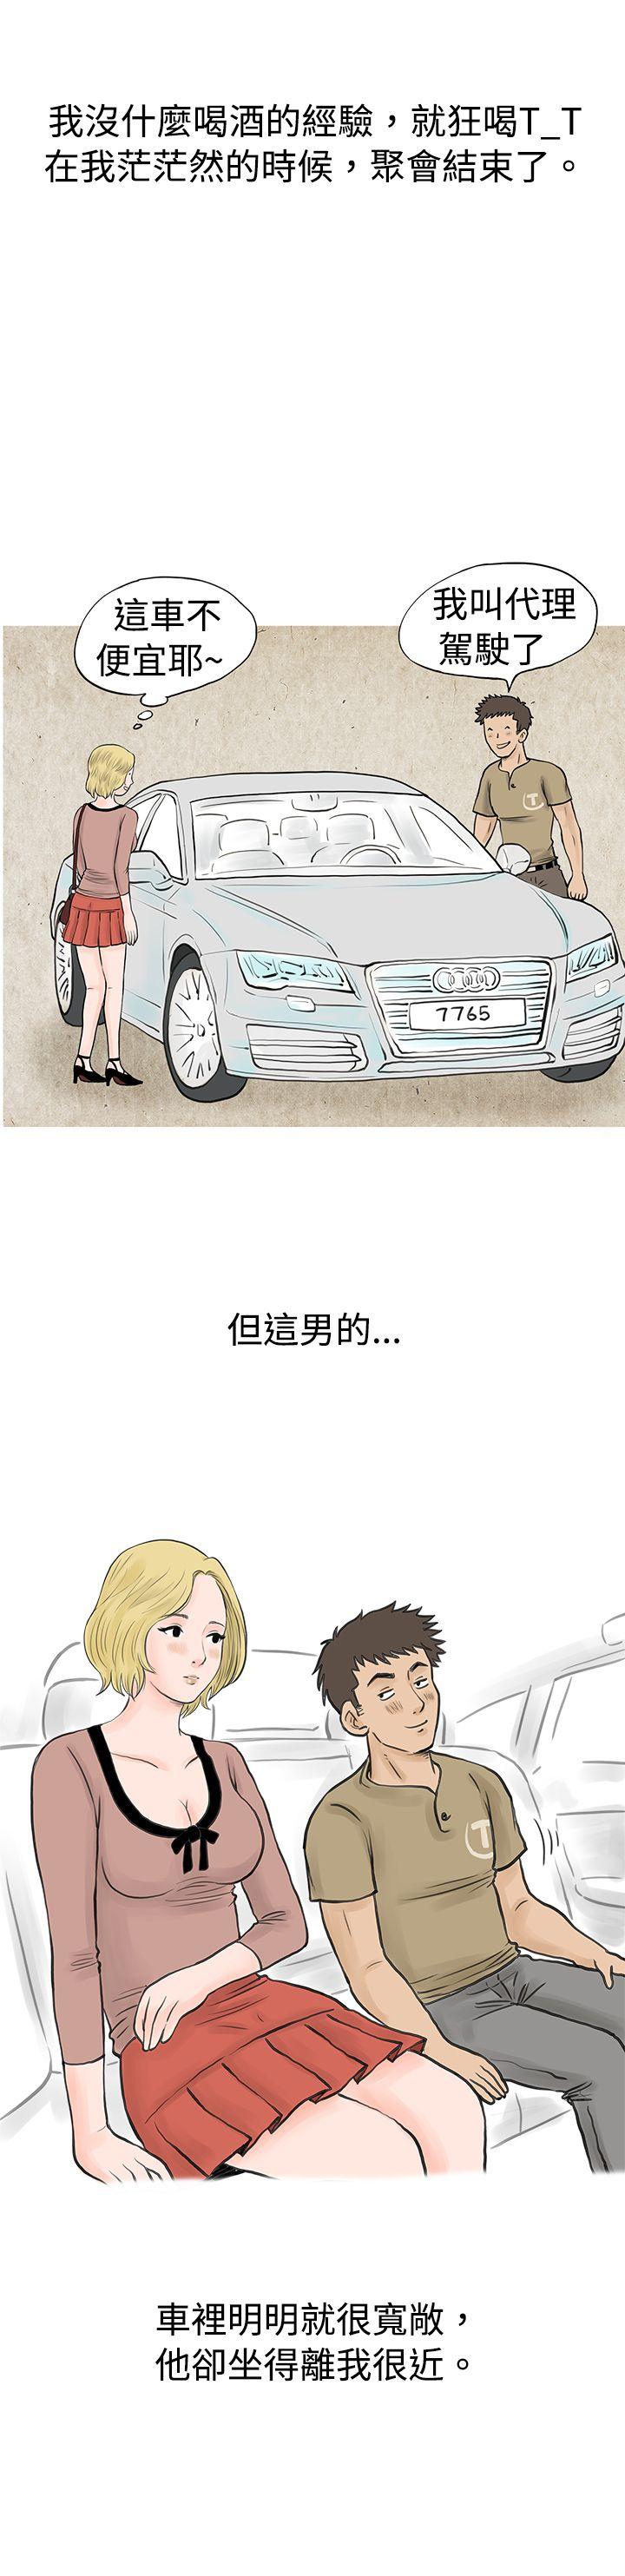 秘密Story  个人秀BJ小故事(下) 漫画图片4.jpg